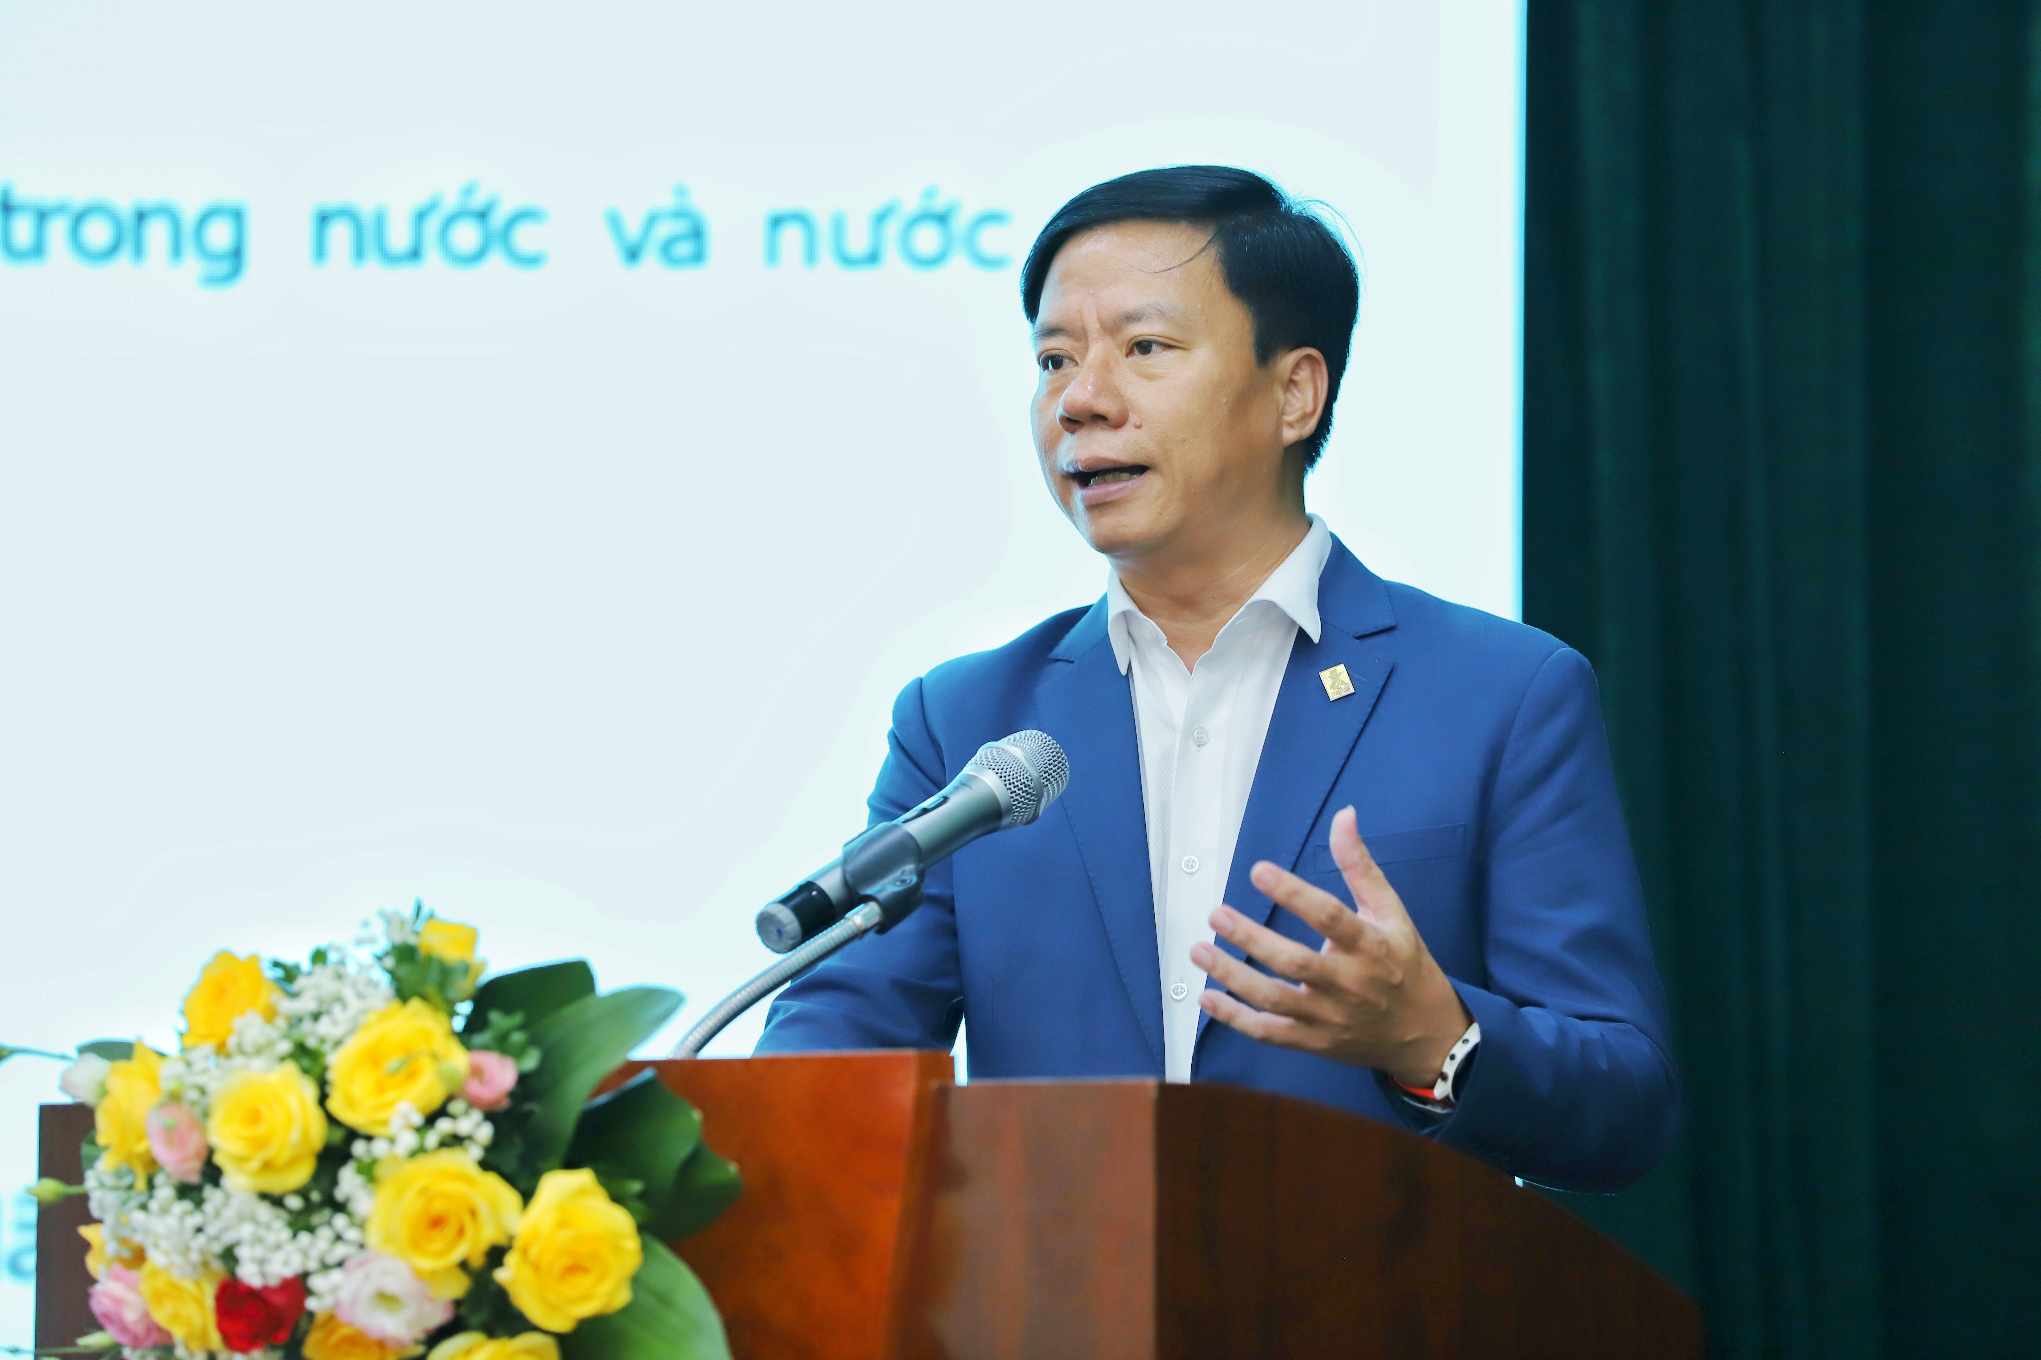 Ông Nguyễn Quang Minh - Tổng Giám đốc Công ty Cổ phần Thanh toán Quốc gia Việt Nam (NAPAS) - trình bày tham luận. Ảnh: Tô Thế